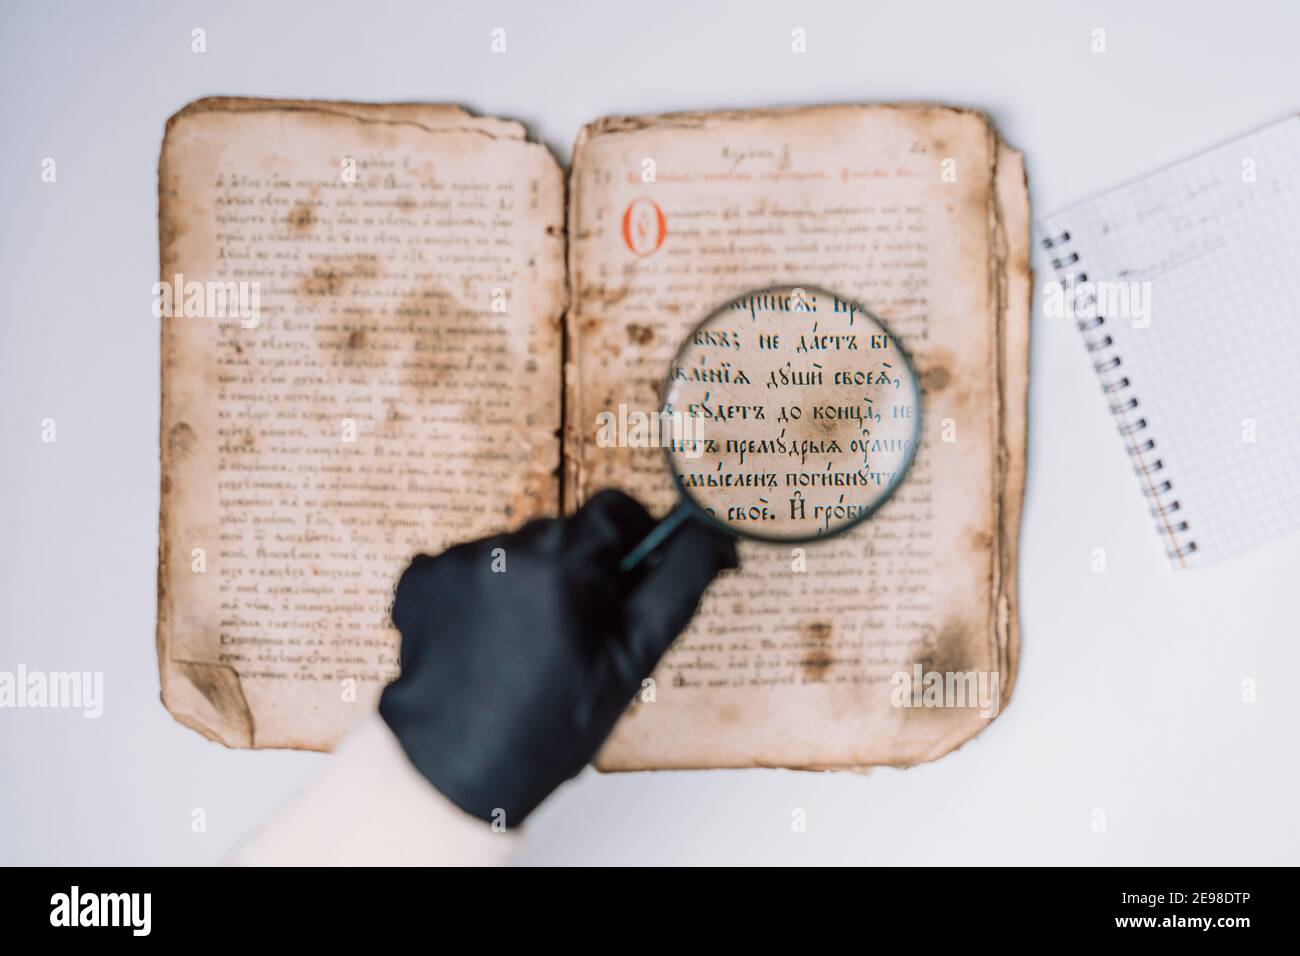 Historien scientifique en gants lisant livre antique avec loupe. Traduction  de la littérature religieuse. Manuscrit avec des écrits anciens Photo Stock  - Alamy